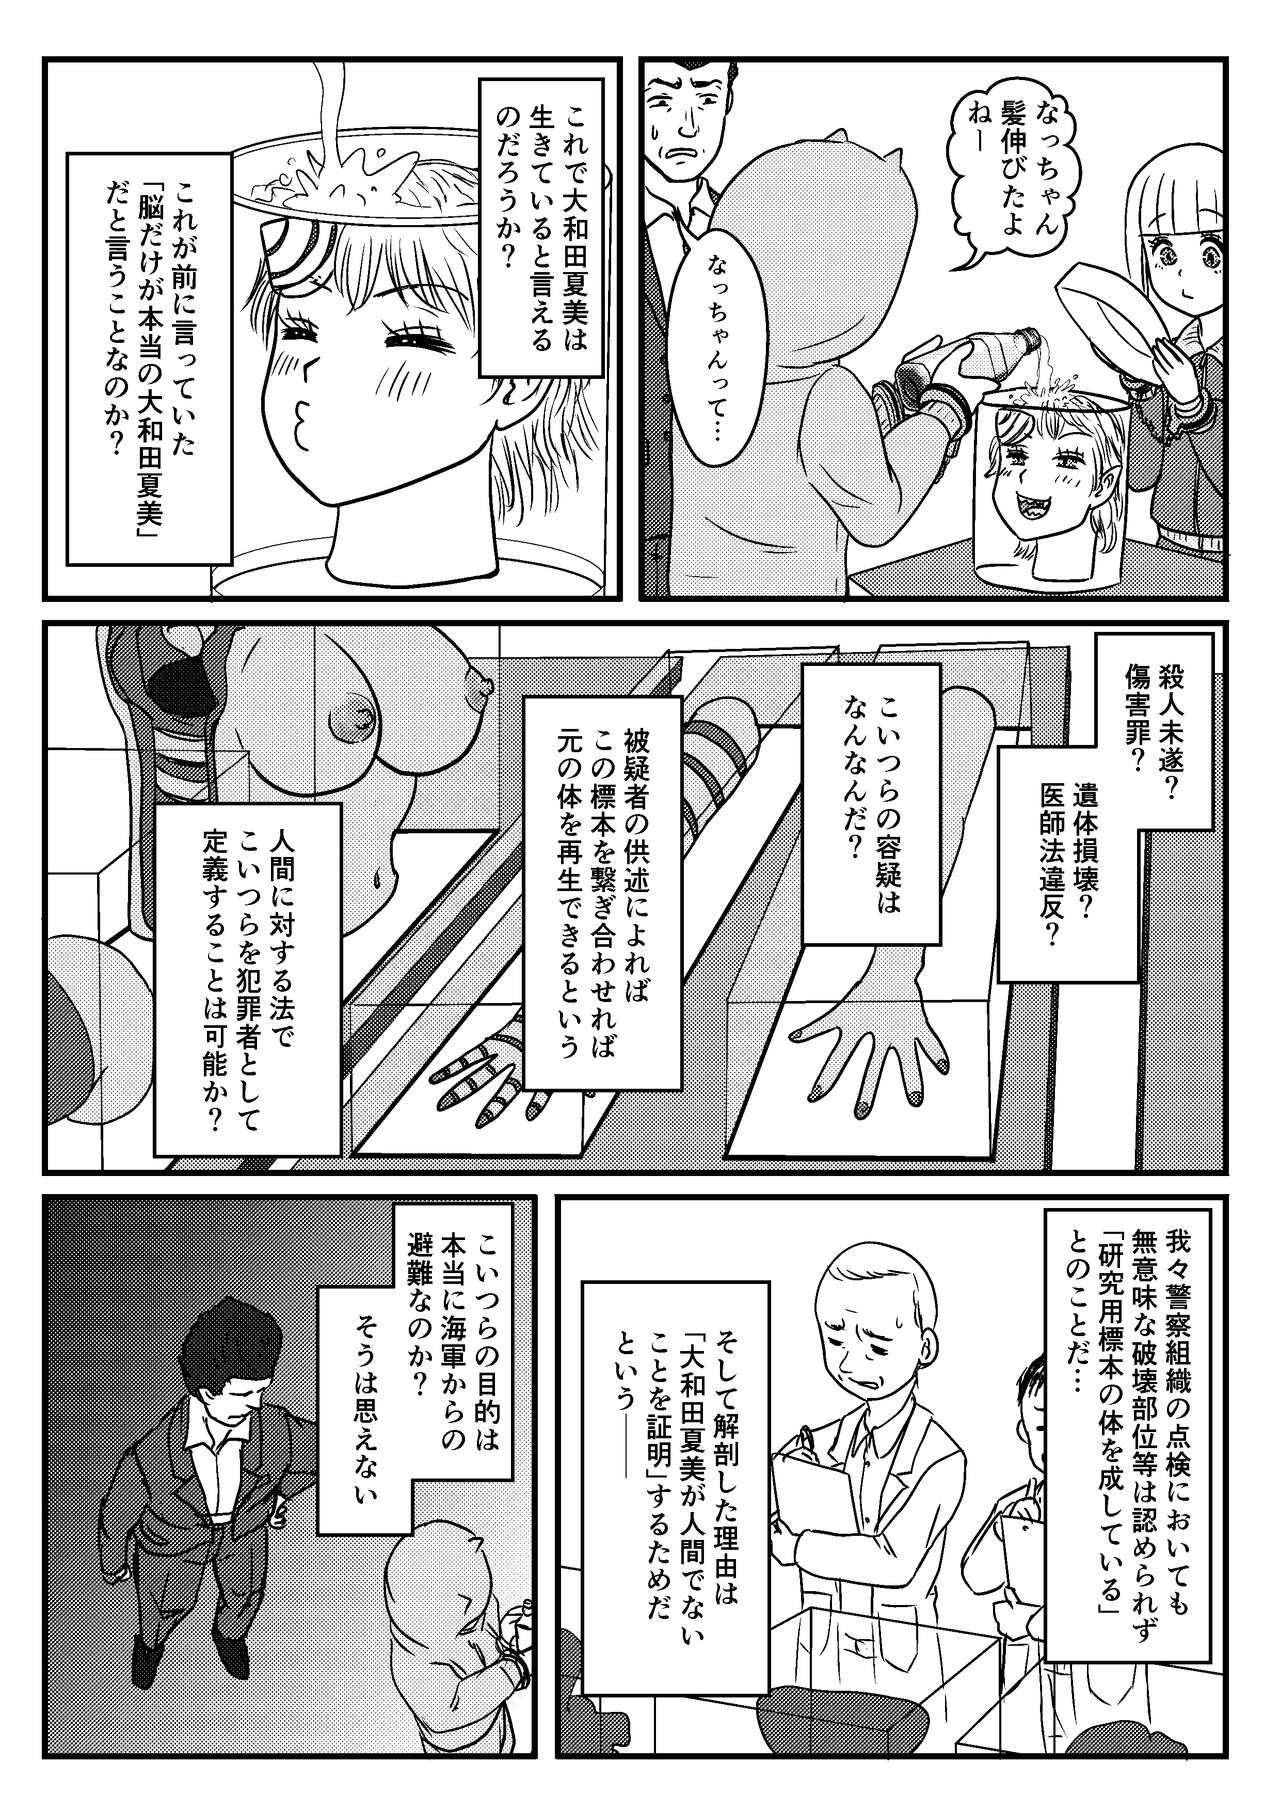 Stepsister Josei Teitoku no Miru Yume wa… Rei #4 - Kantai collection Deepthroat - Page 22